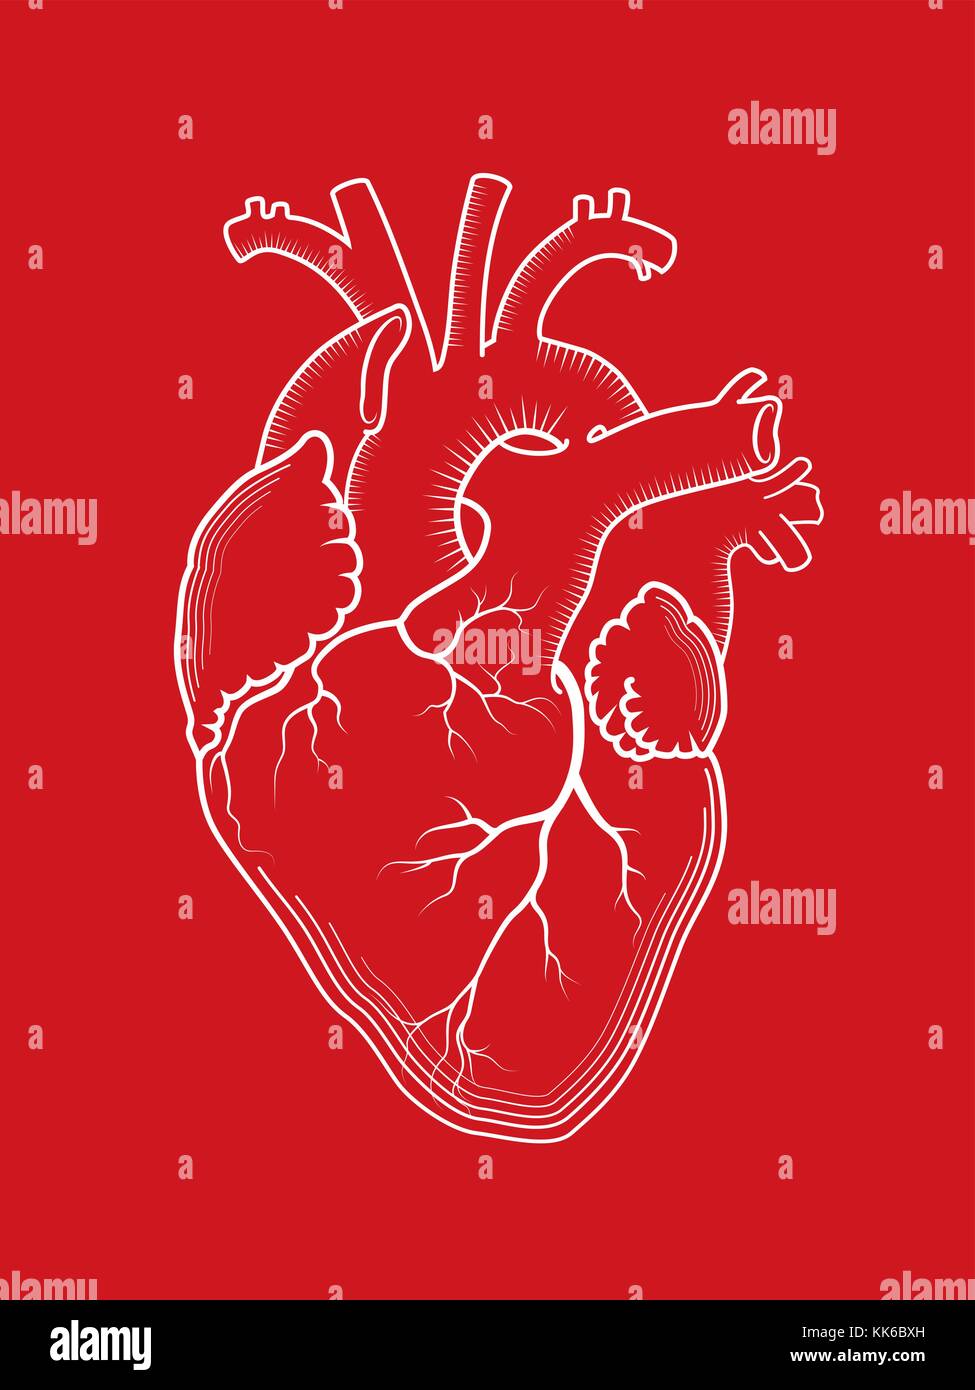 Cuore. L'organo umano interno, struttura anatomica. Disegno con contorno rosso dettagliato, stampa incisa. Illustrazione Vettoriale